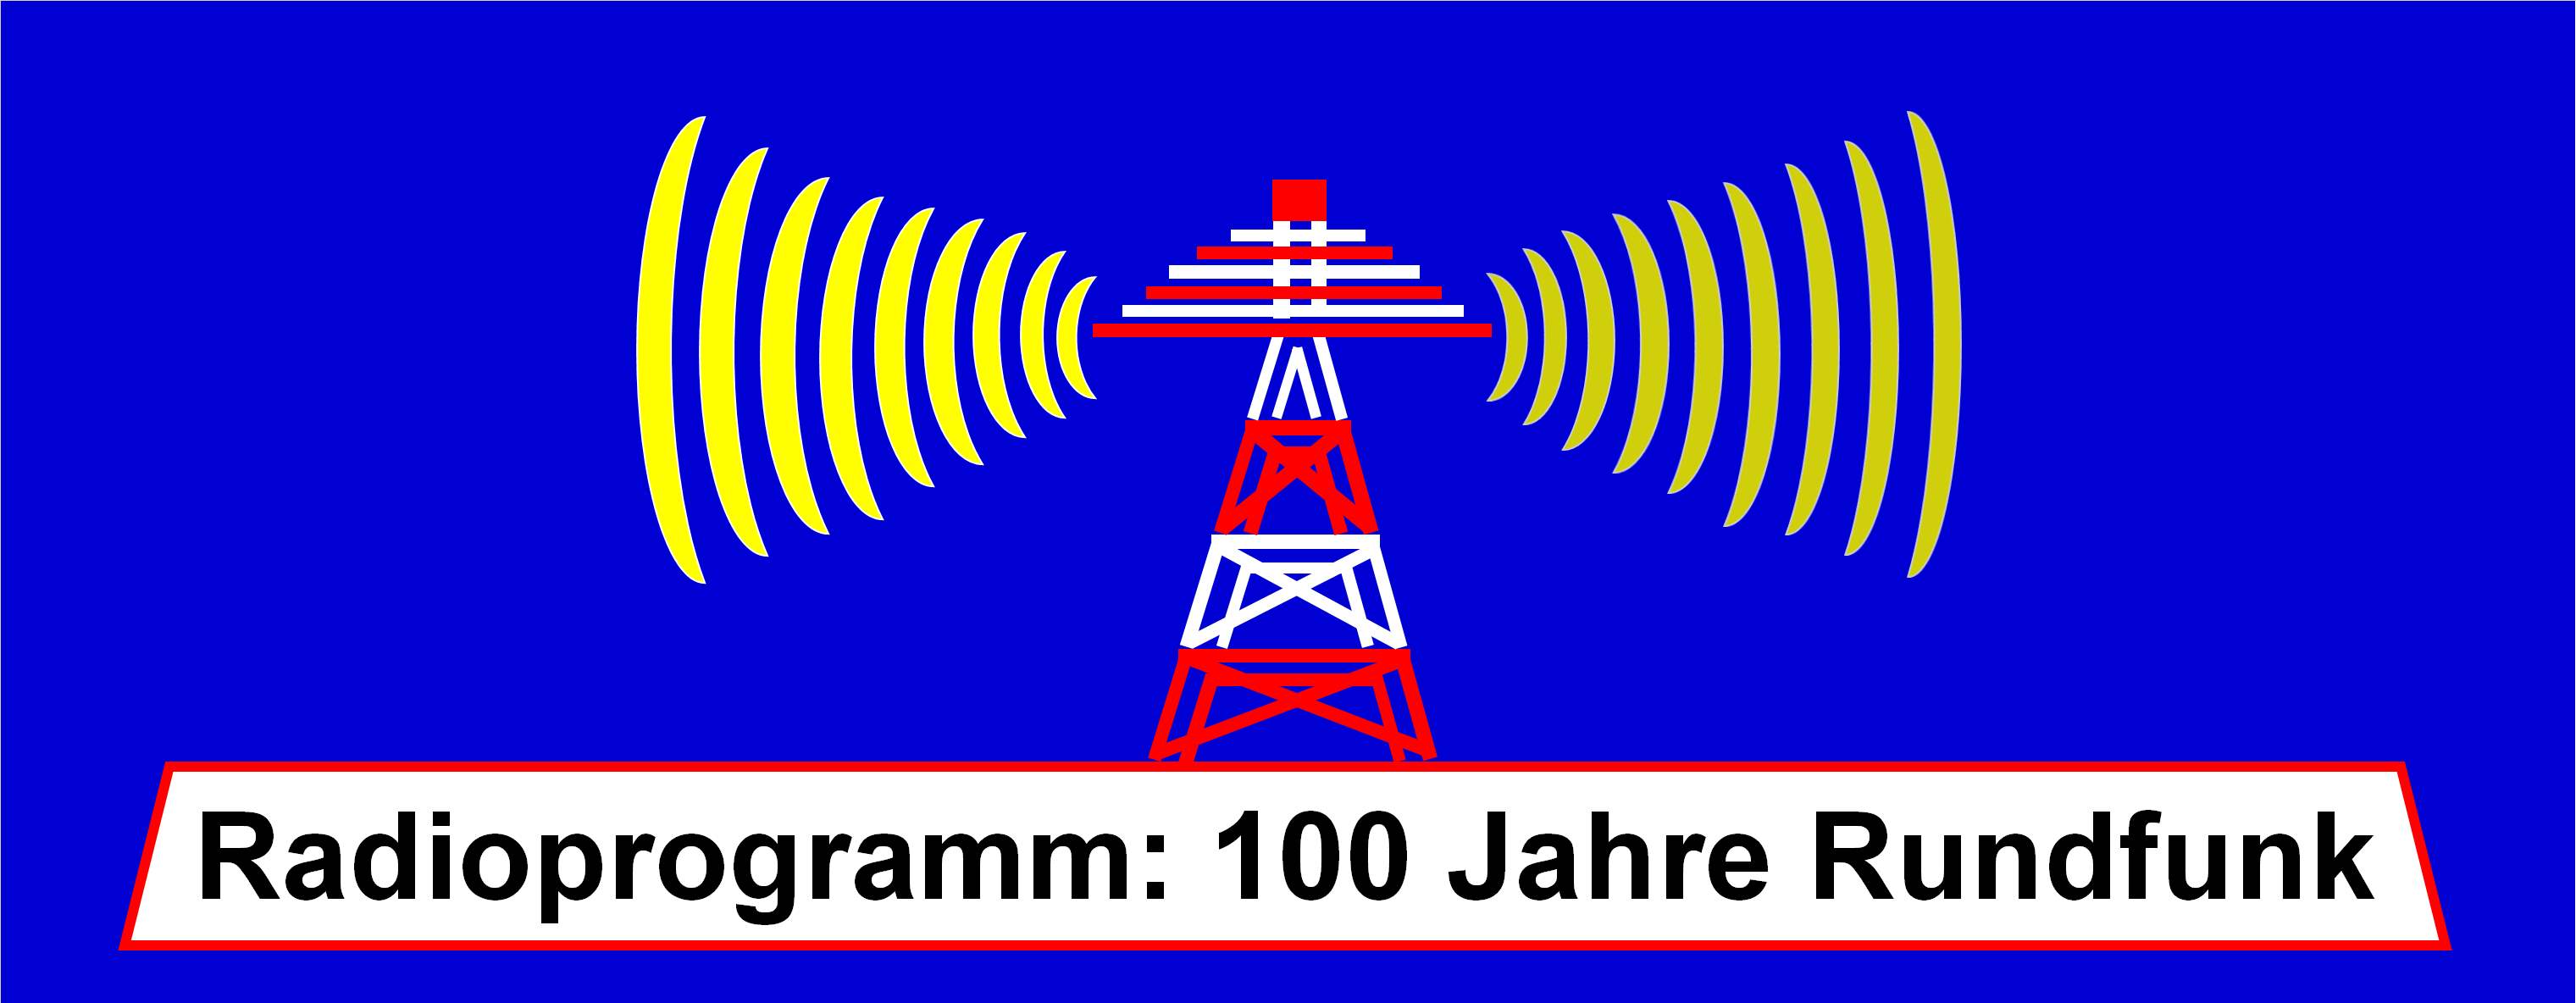 Radioprogramm 100 Jahre rundfunk